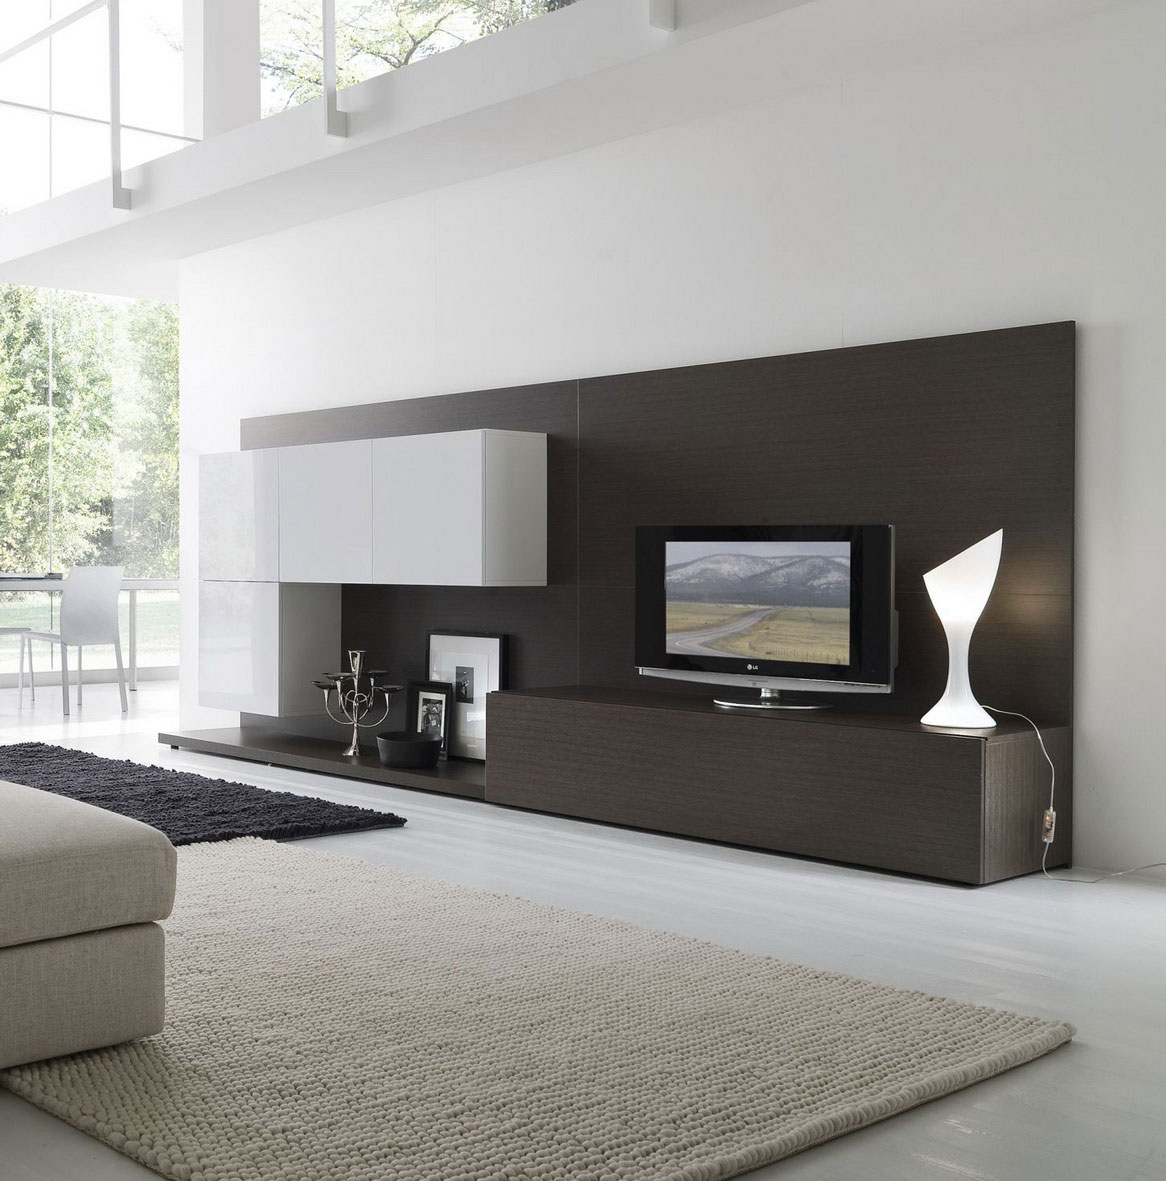 Modern Wallpaper Designs For Living Room